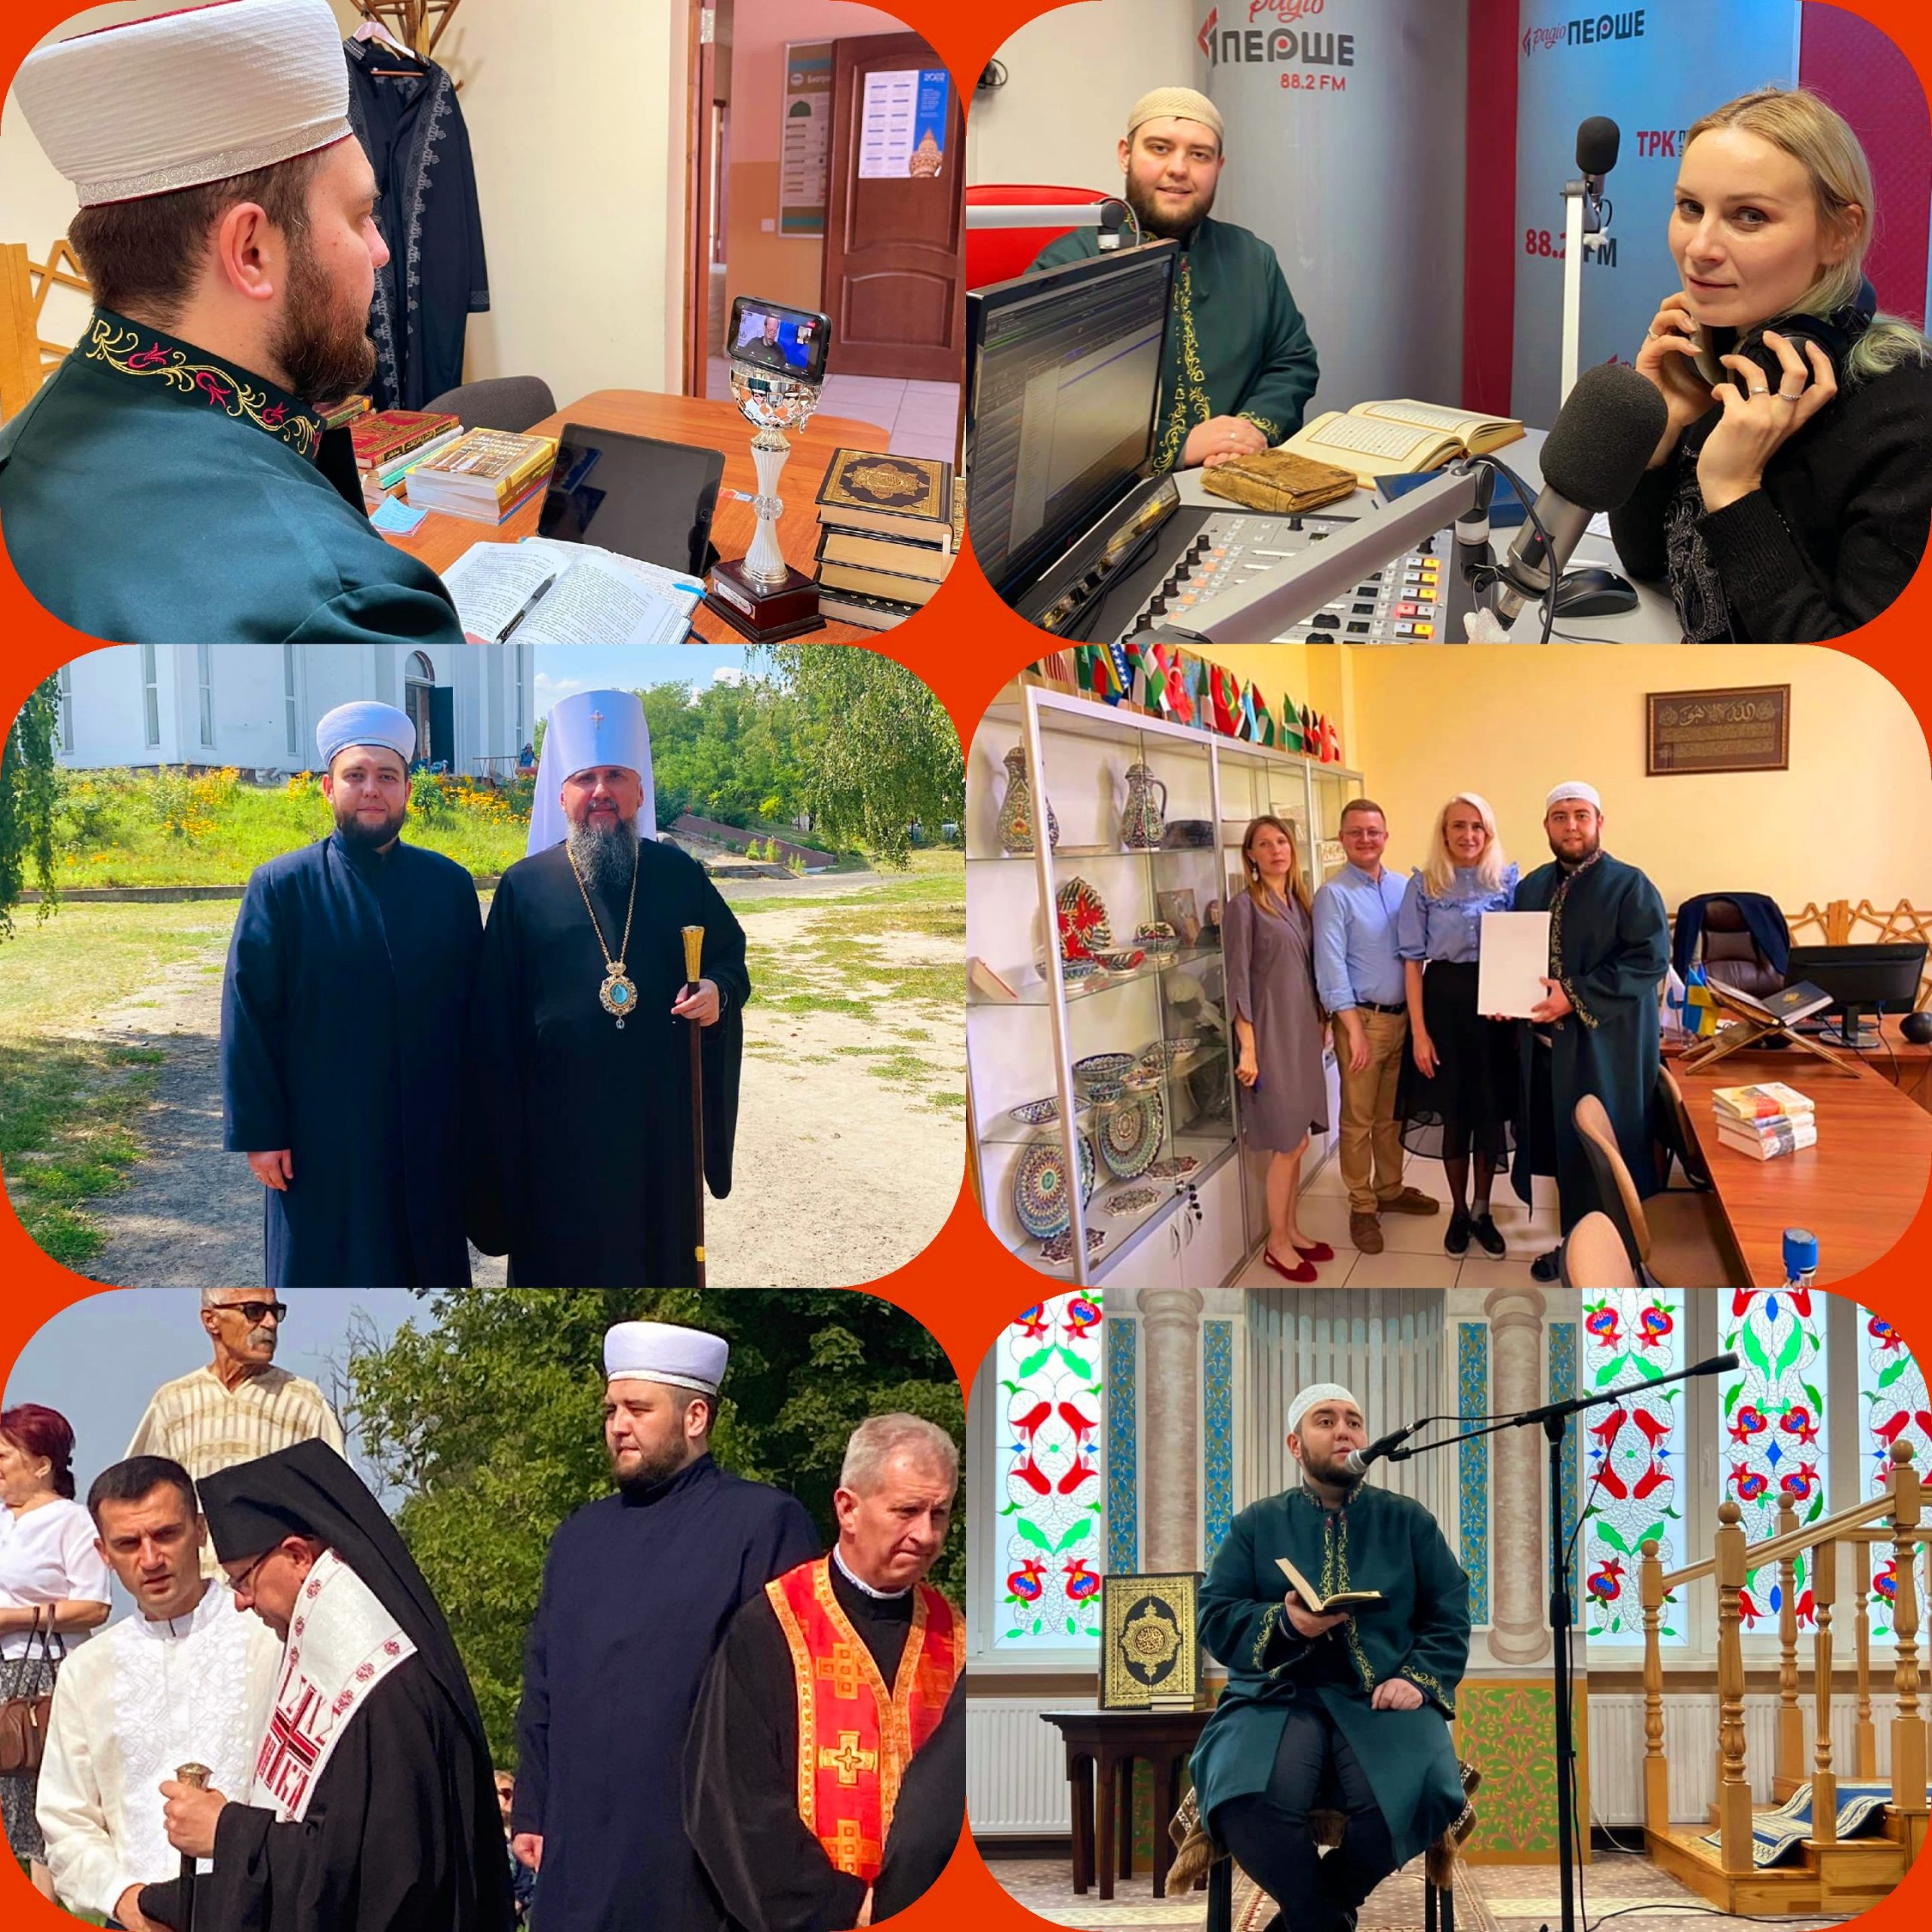 الشيح مراد سليمانوف، مفتي الإدارة الدينية لمسلمي أوكرانيا "أمة"، وإمام مسجد المركز الإسلامي في مدينة لفيف بغرب أوكرانيا.